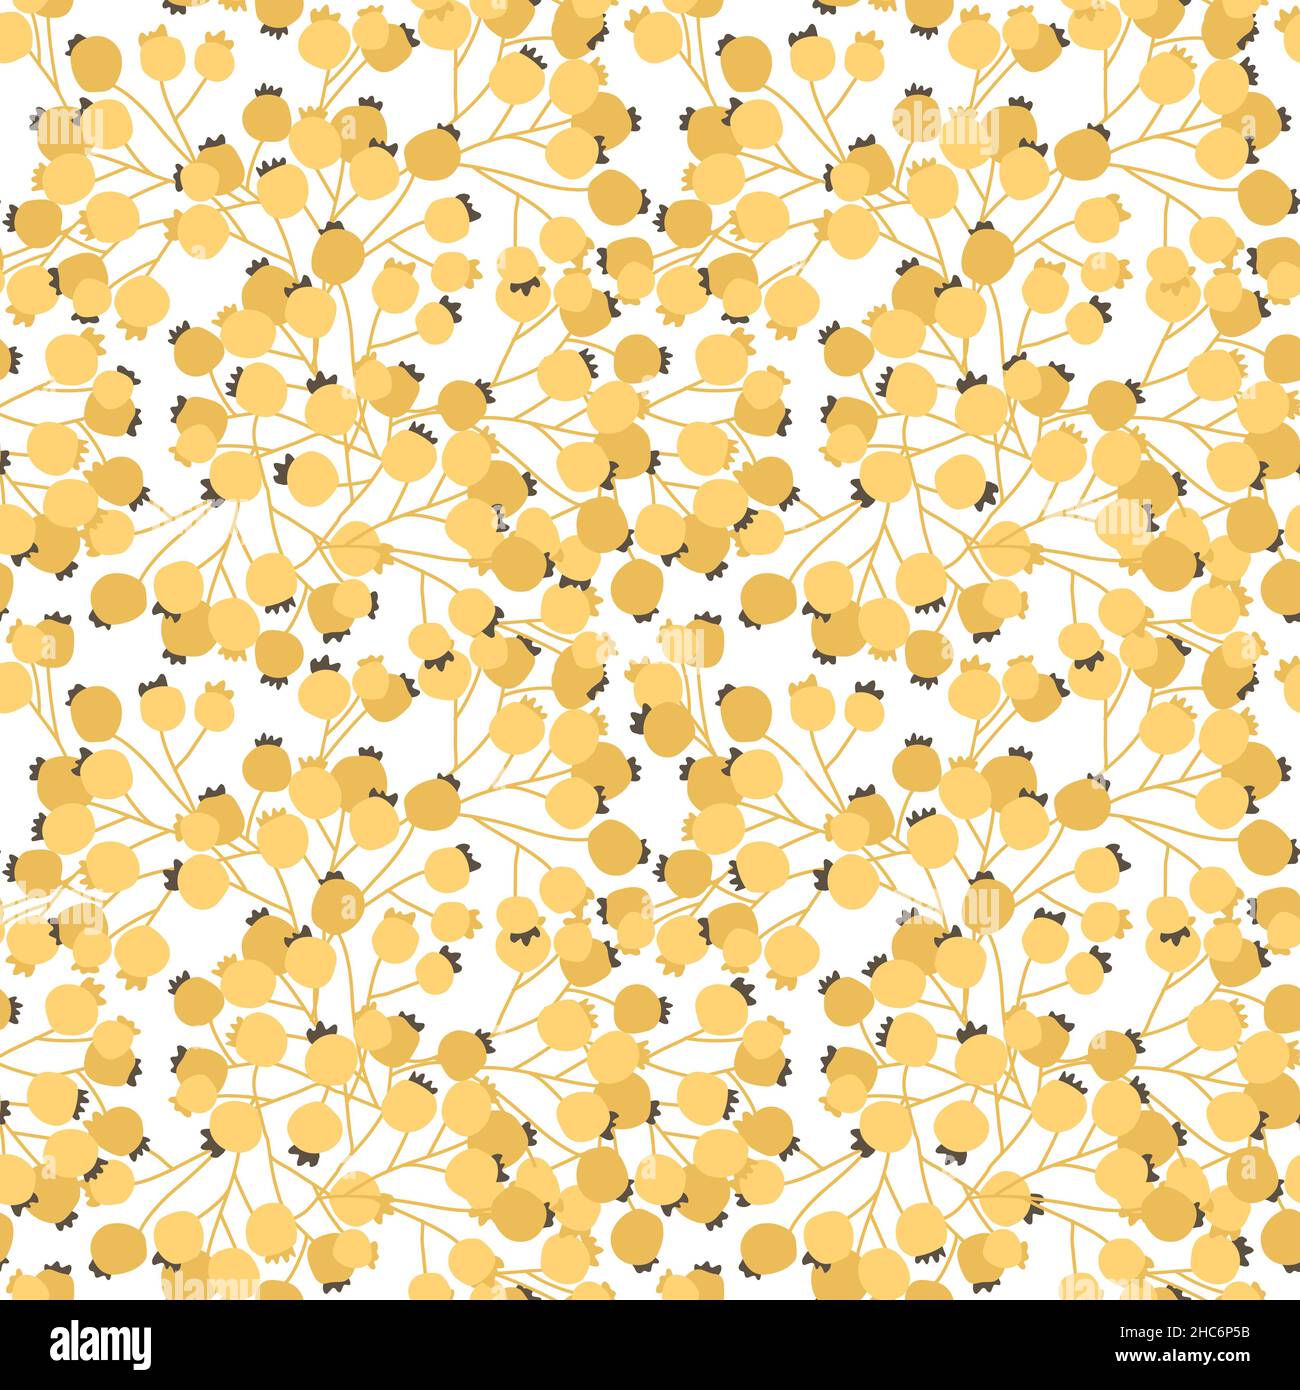 Gelb-braune Beeren nahtloses Muster. Vektor handgezeichnete Falldarstellung von Viburnum oder Bergaschezweig auf weißem Hintergrund. Stock Vektor